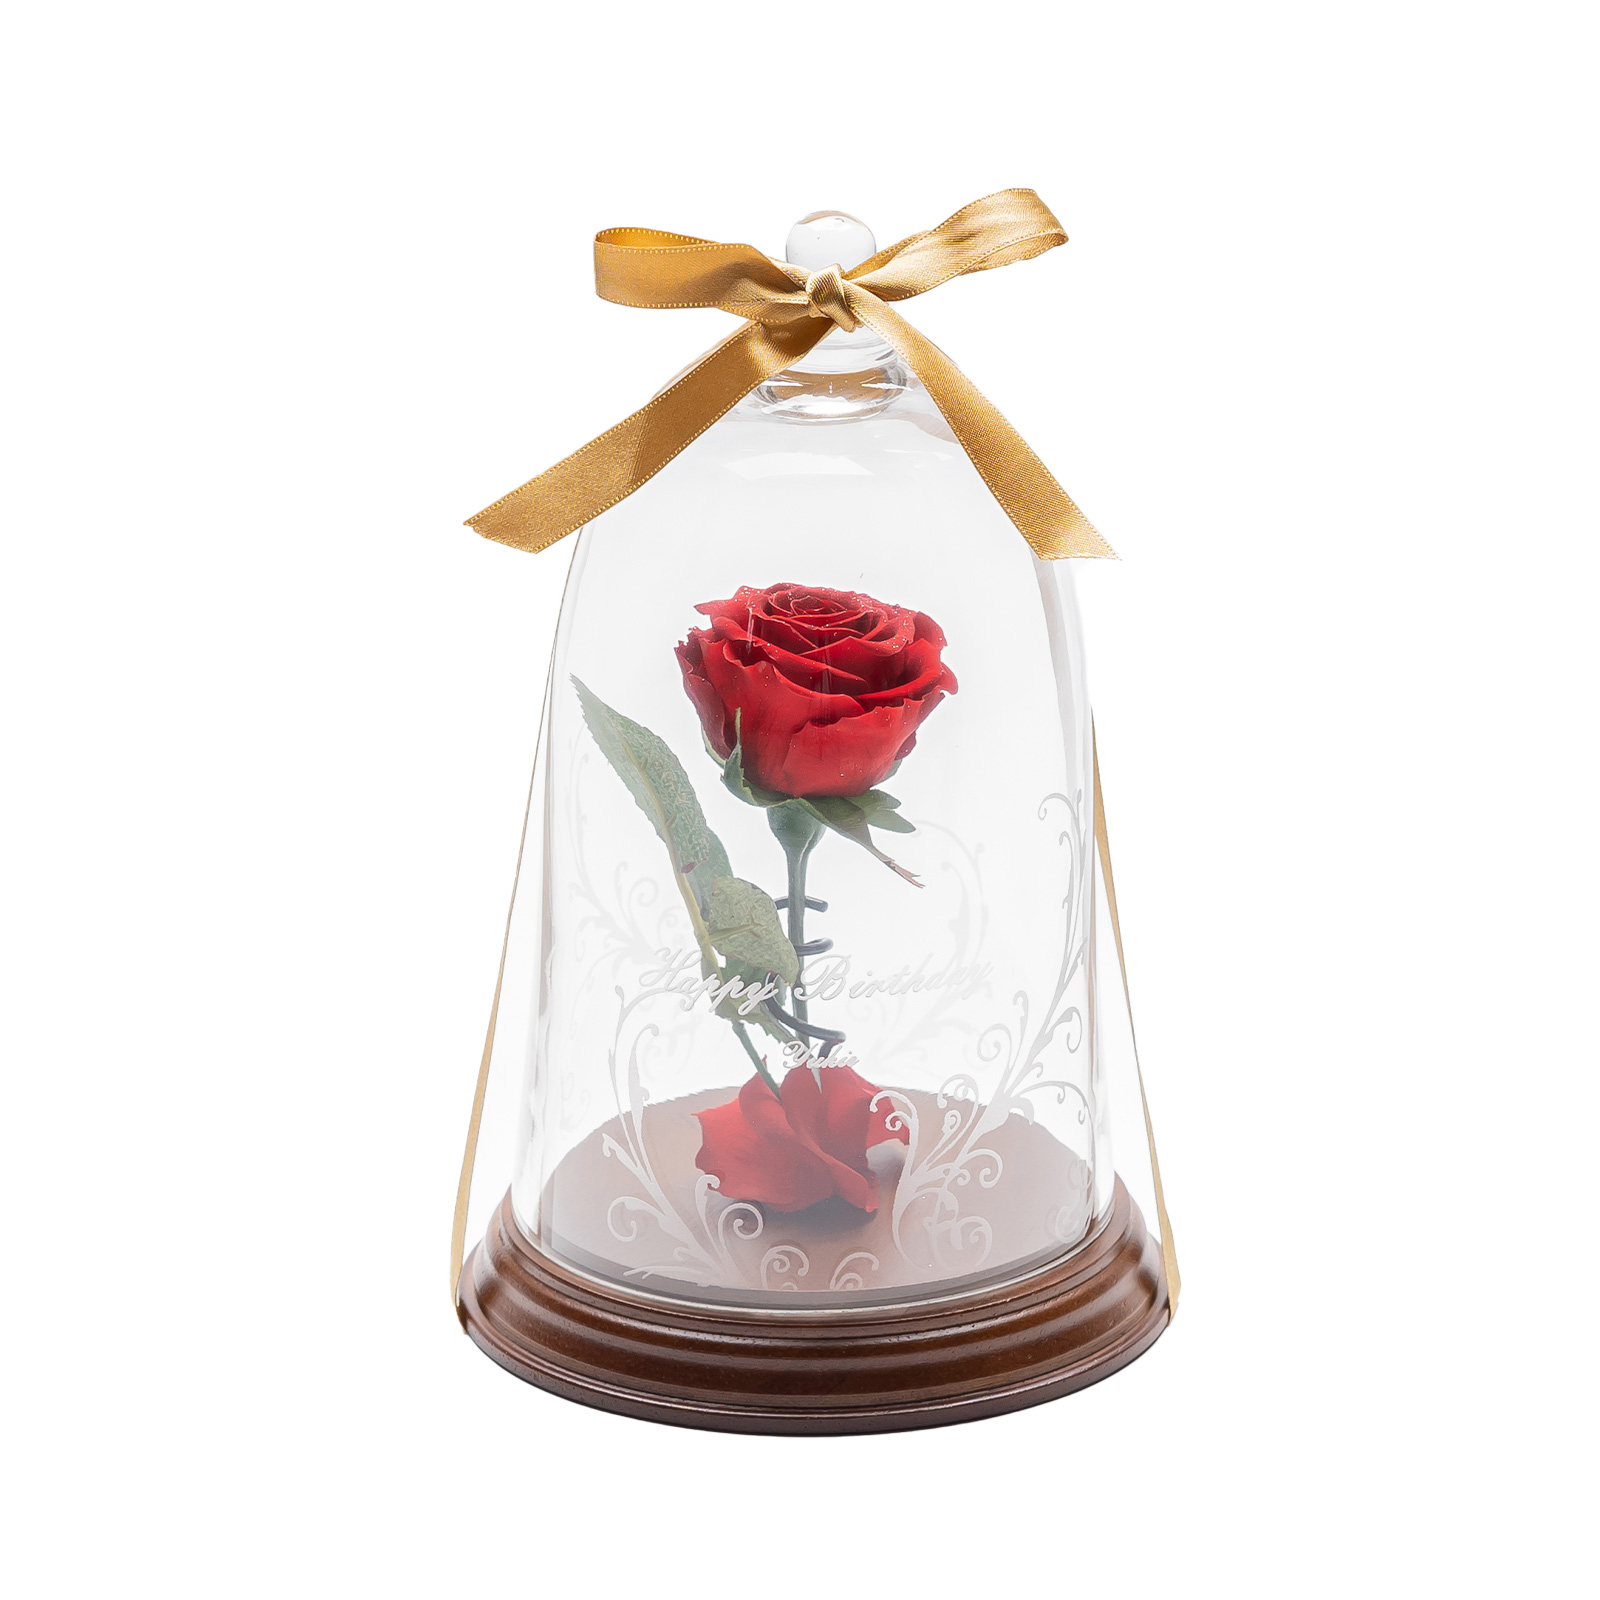 Anny名入れギフト 名入れ 一輪薔薇プリザーブドフラワー ベル型ガラスドームのプレゼント・ギフト通販 Anny（アニー）